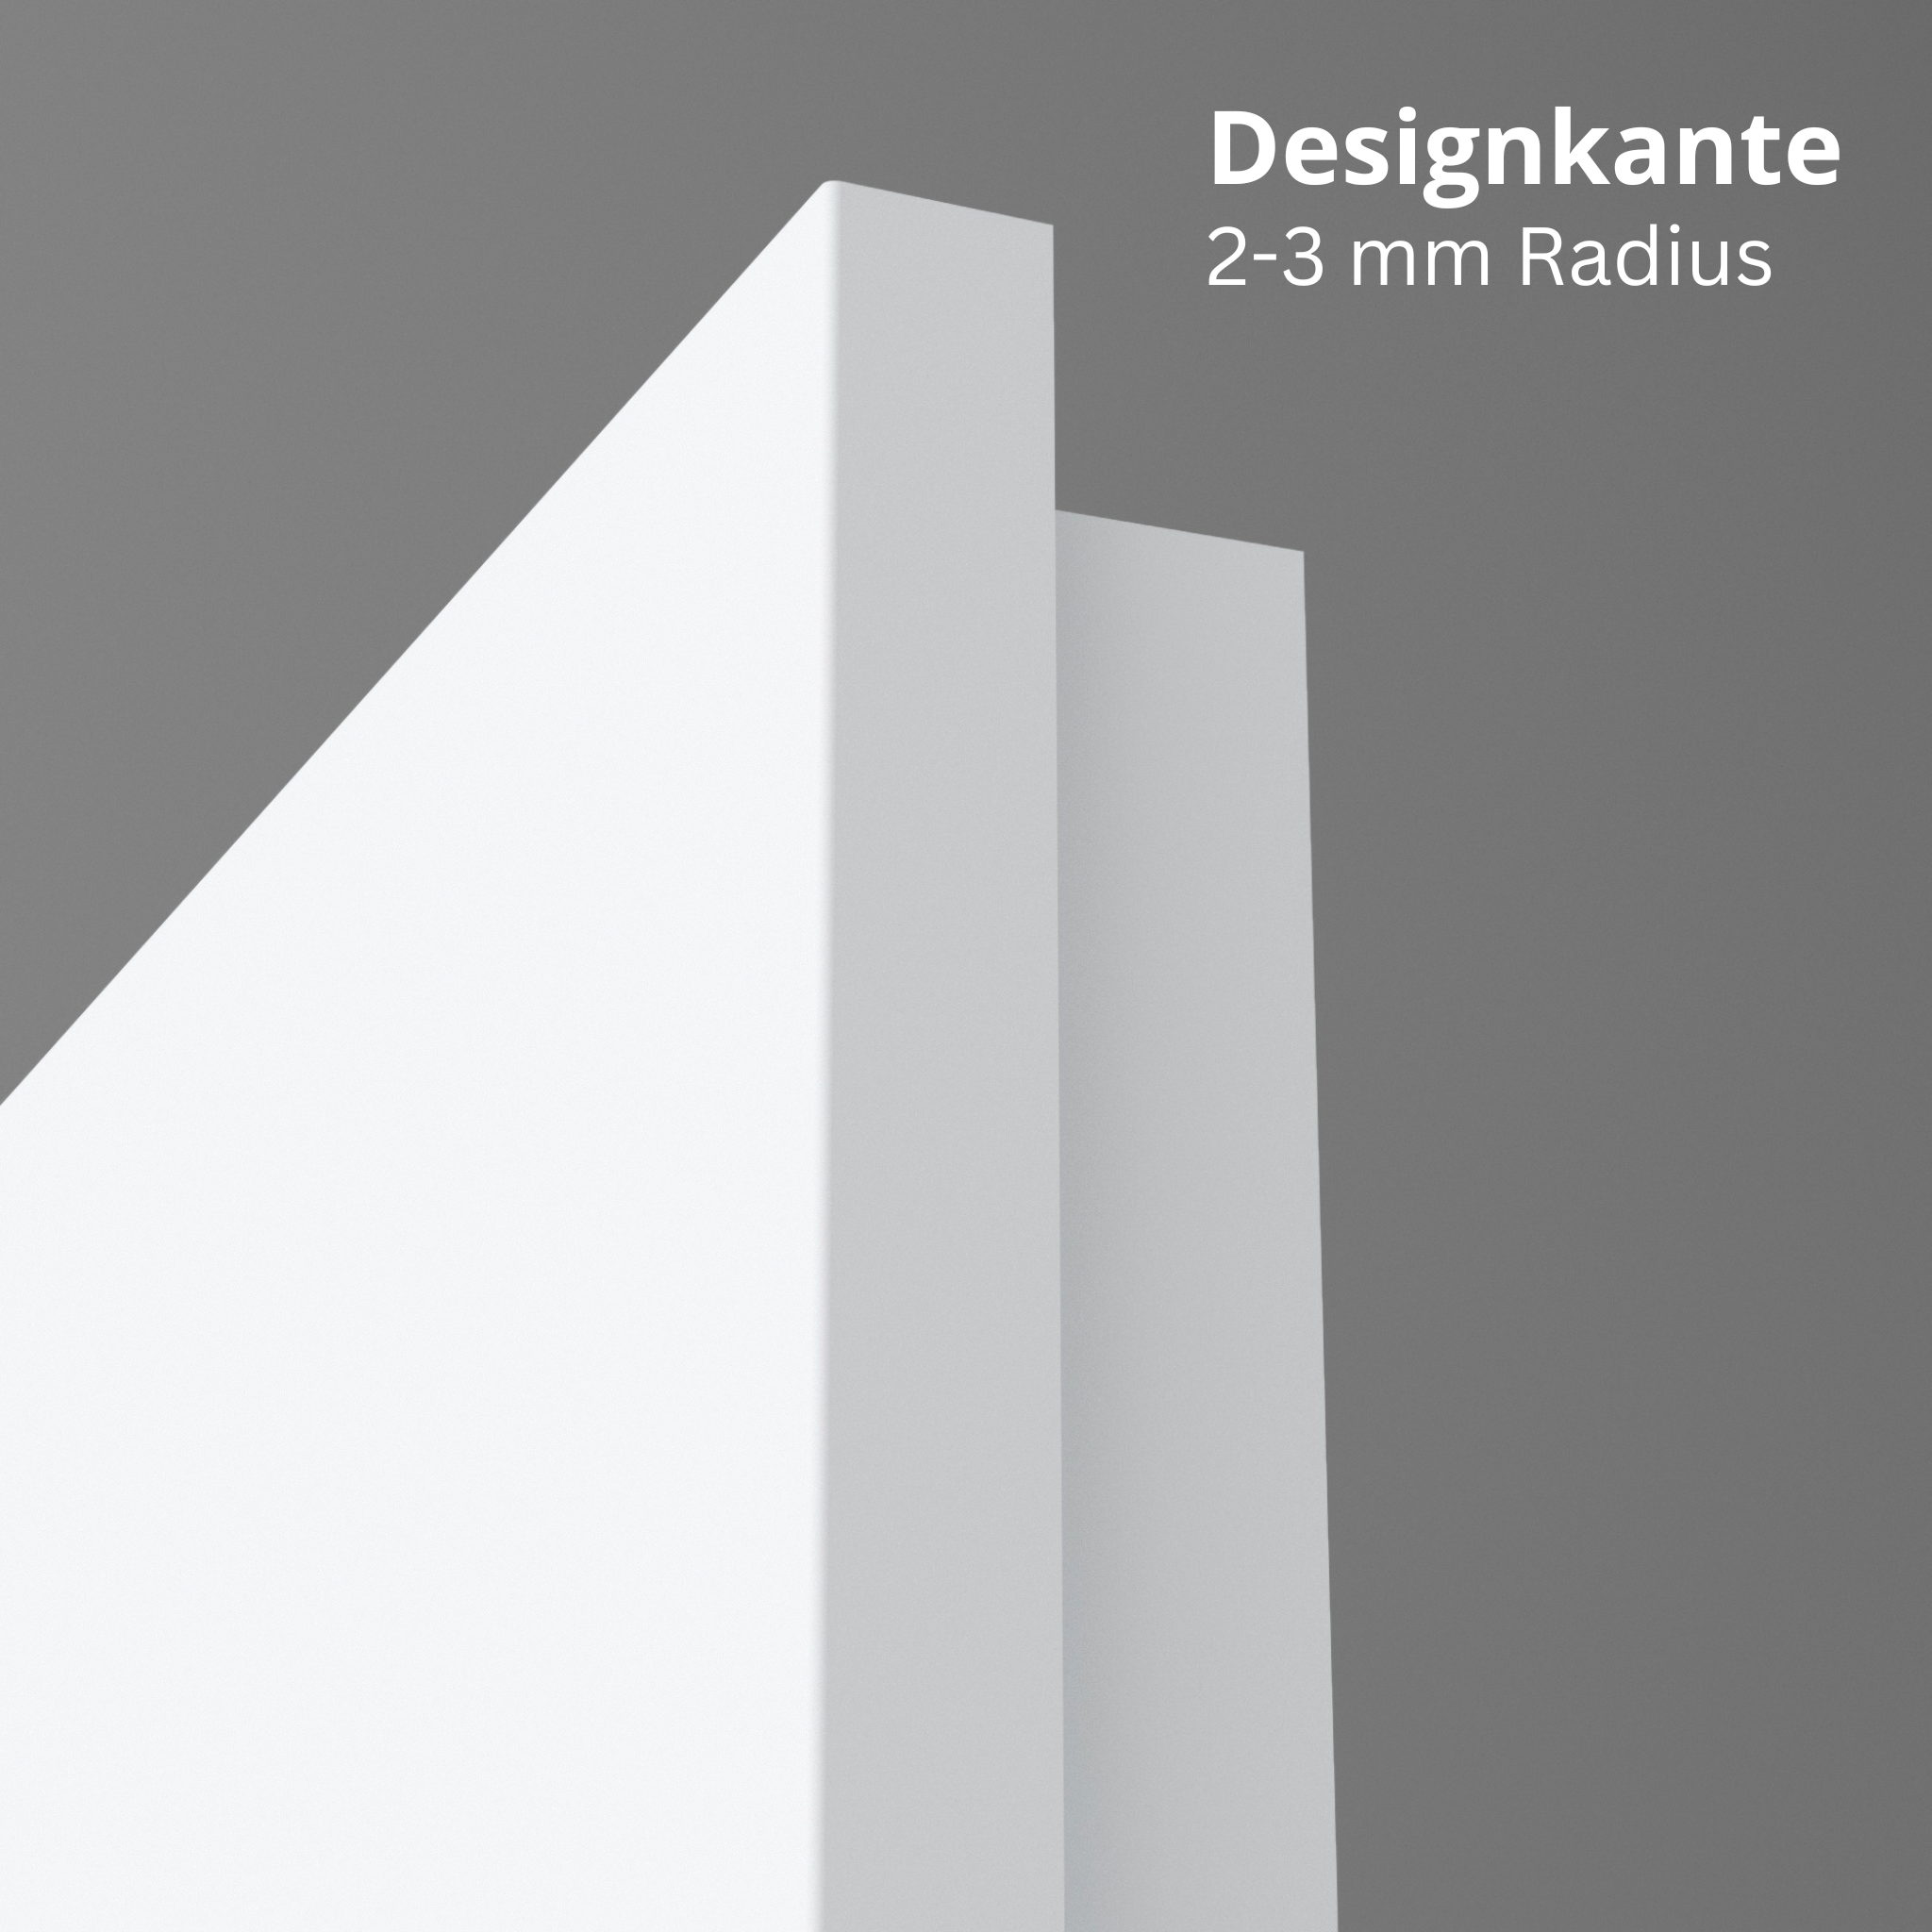 Wohnungseingangstür brillant-weiß Dekor glatt Designkante SK1 / KK2